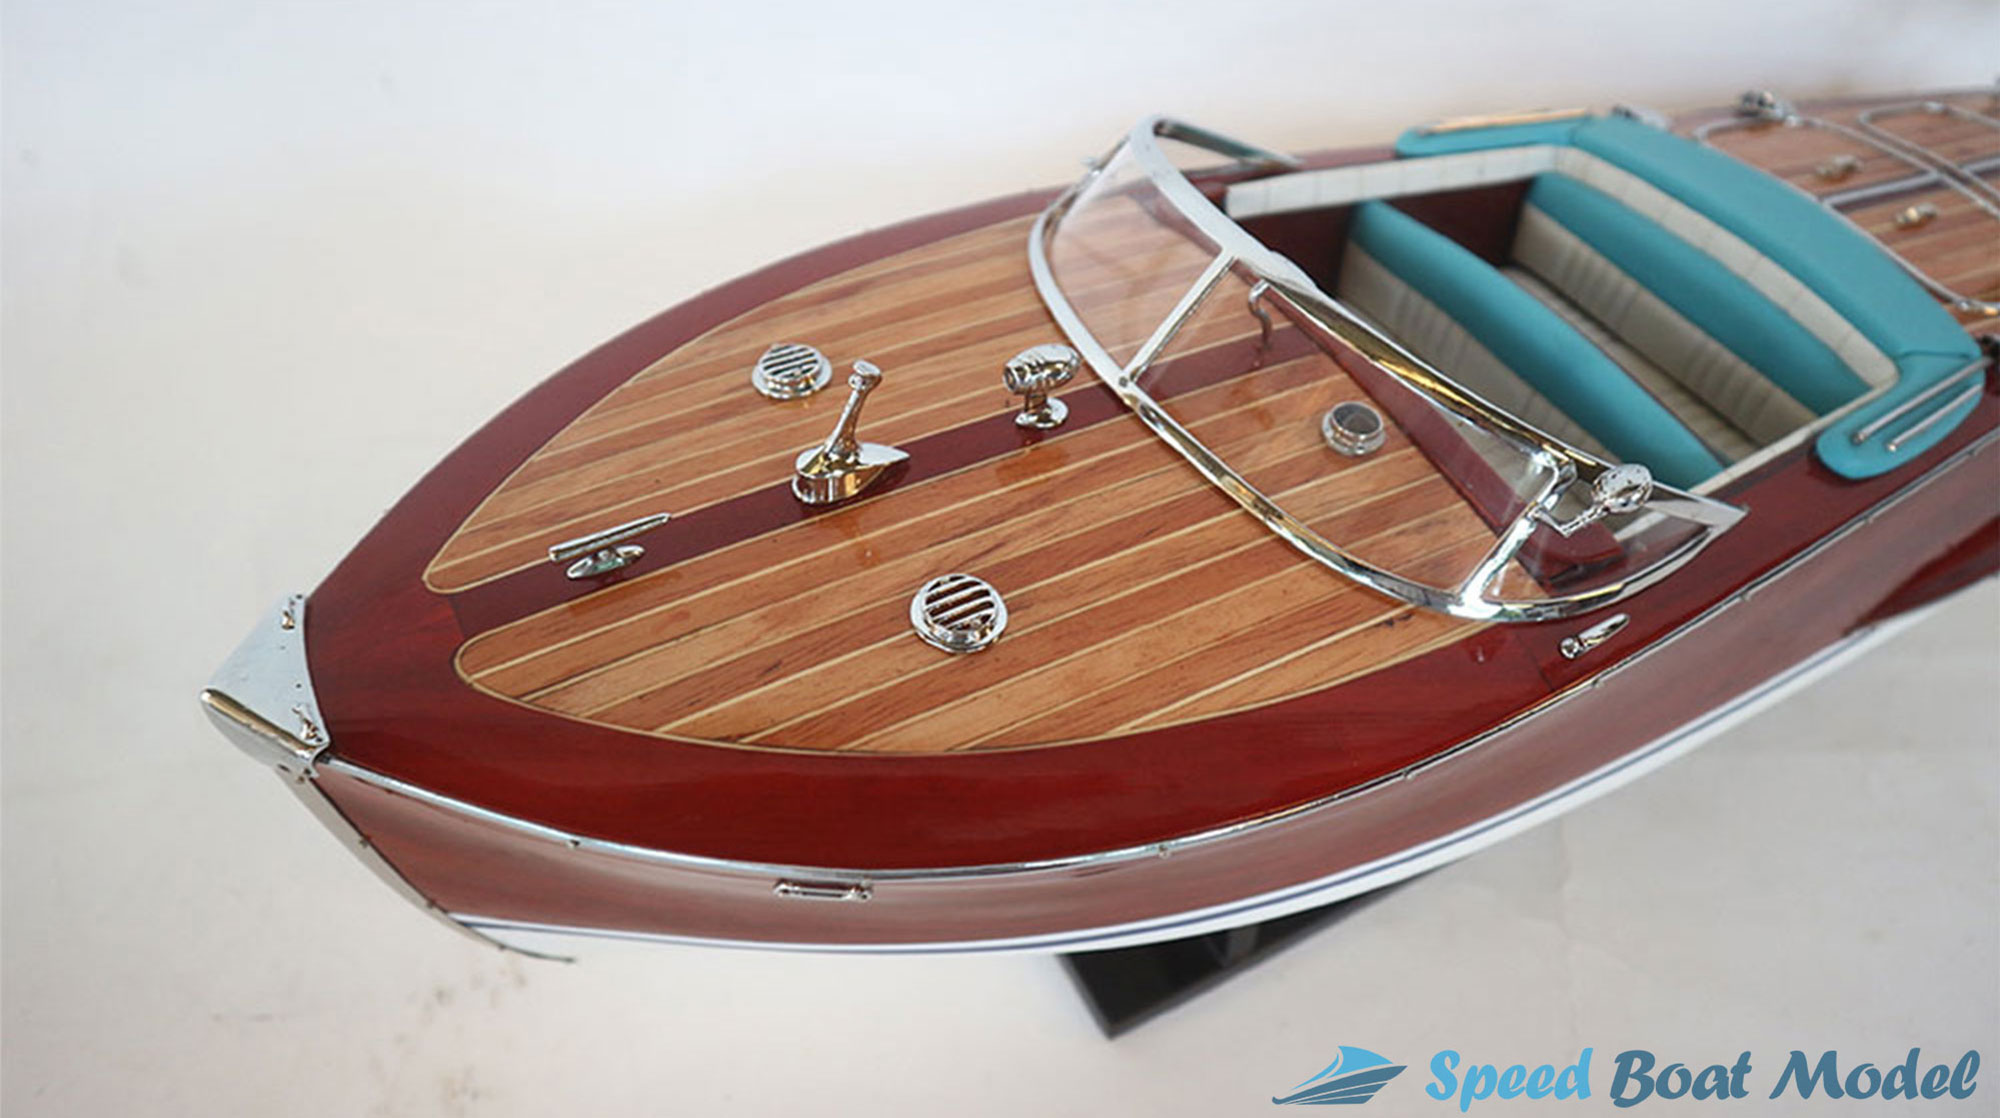 Riva Tritone Classic Speed Boat Model 34.2